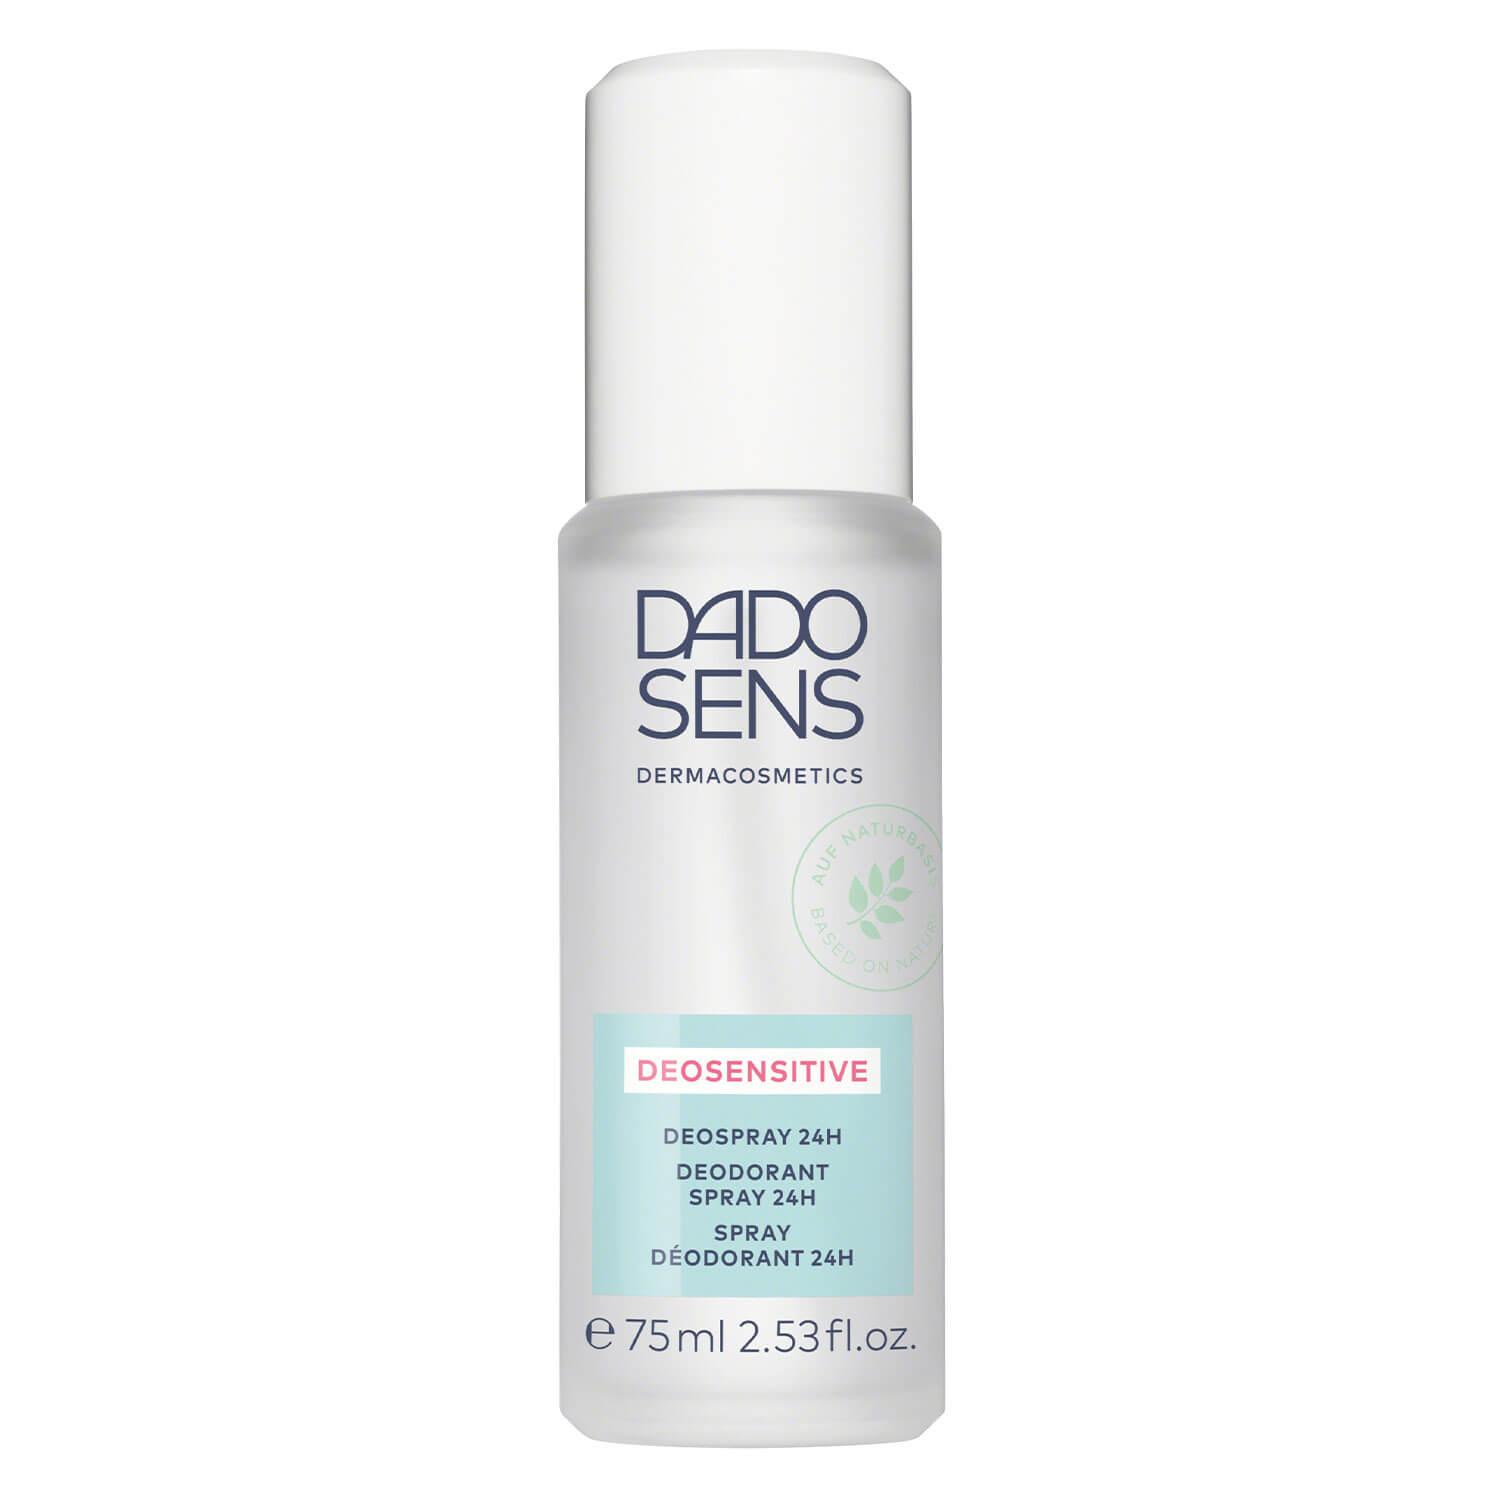 DADO SENS SPECIAL CARE - Deosensitive Deodorant Spray 24H